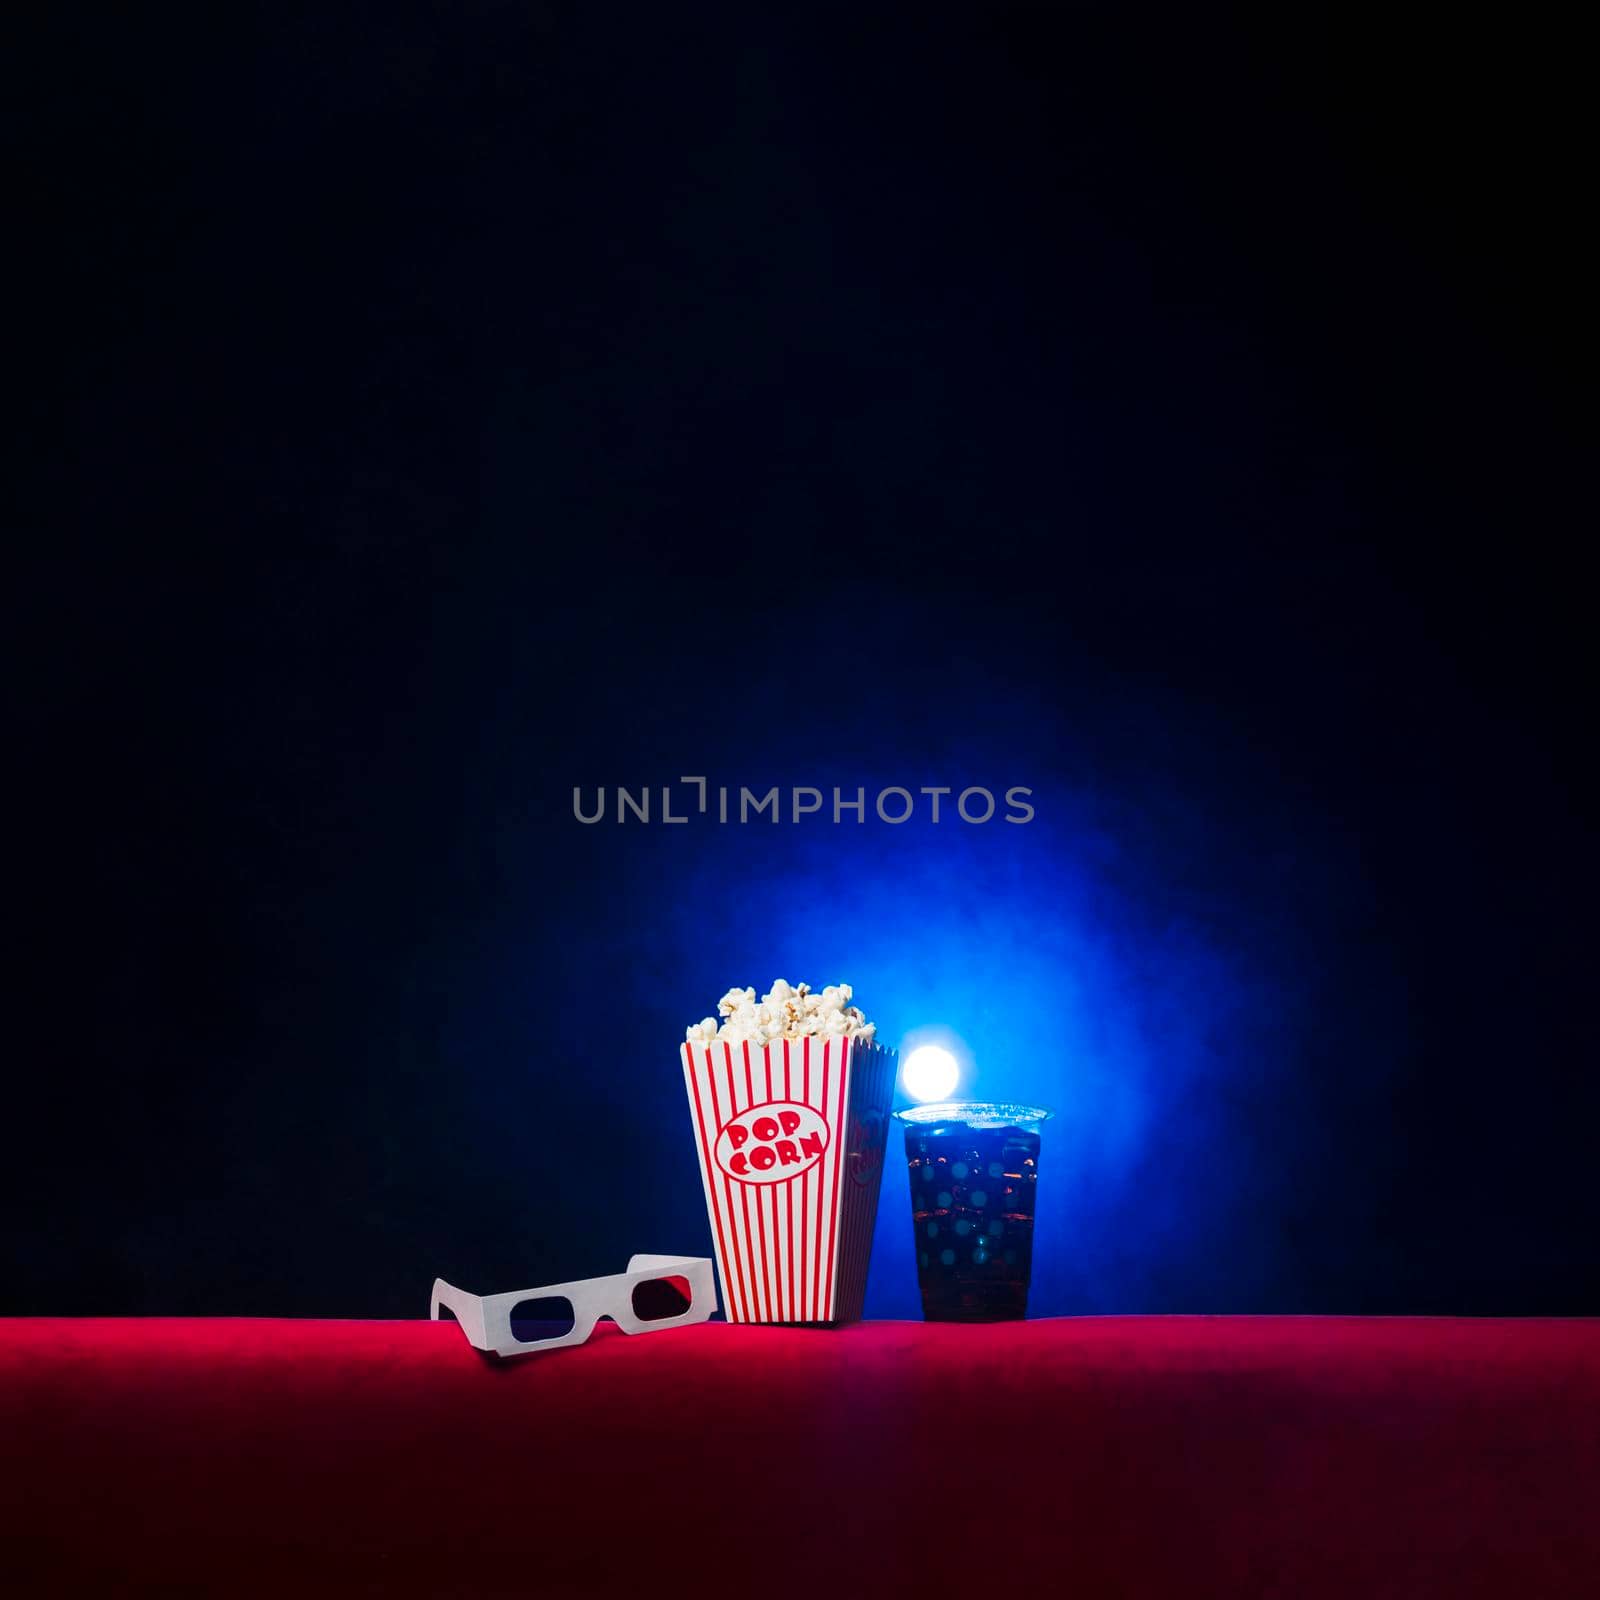 cinema with popcorn box by Zahard